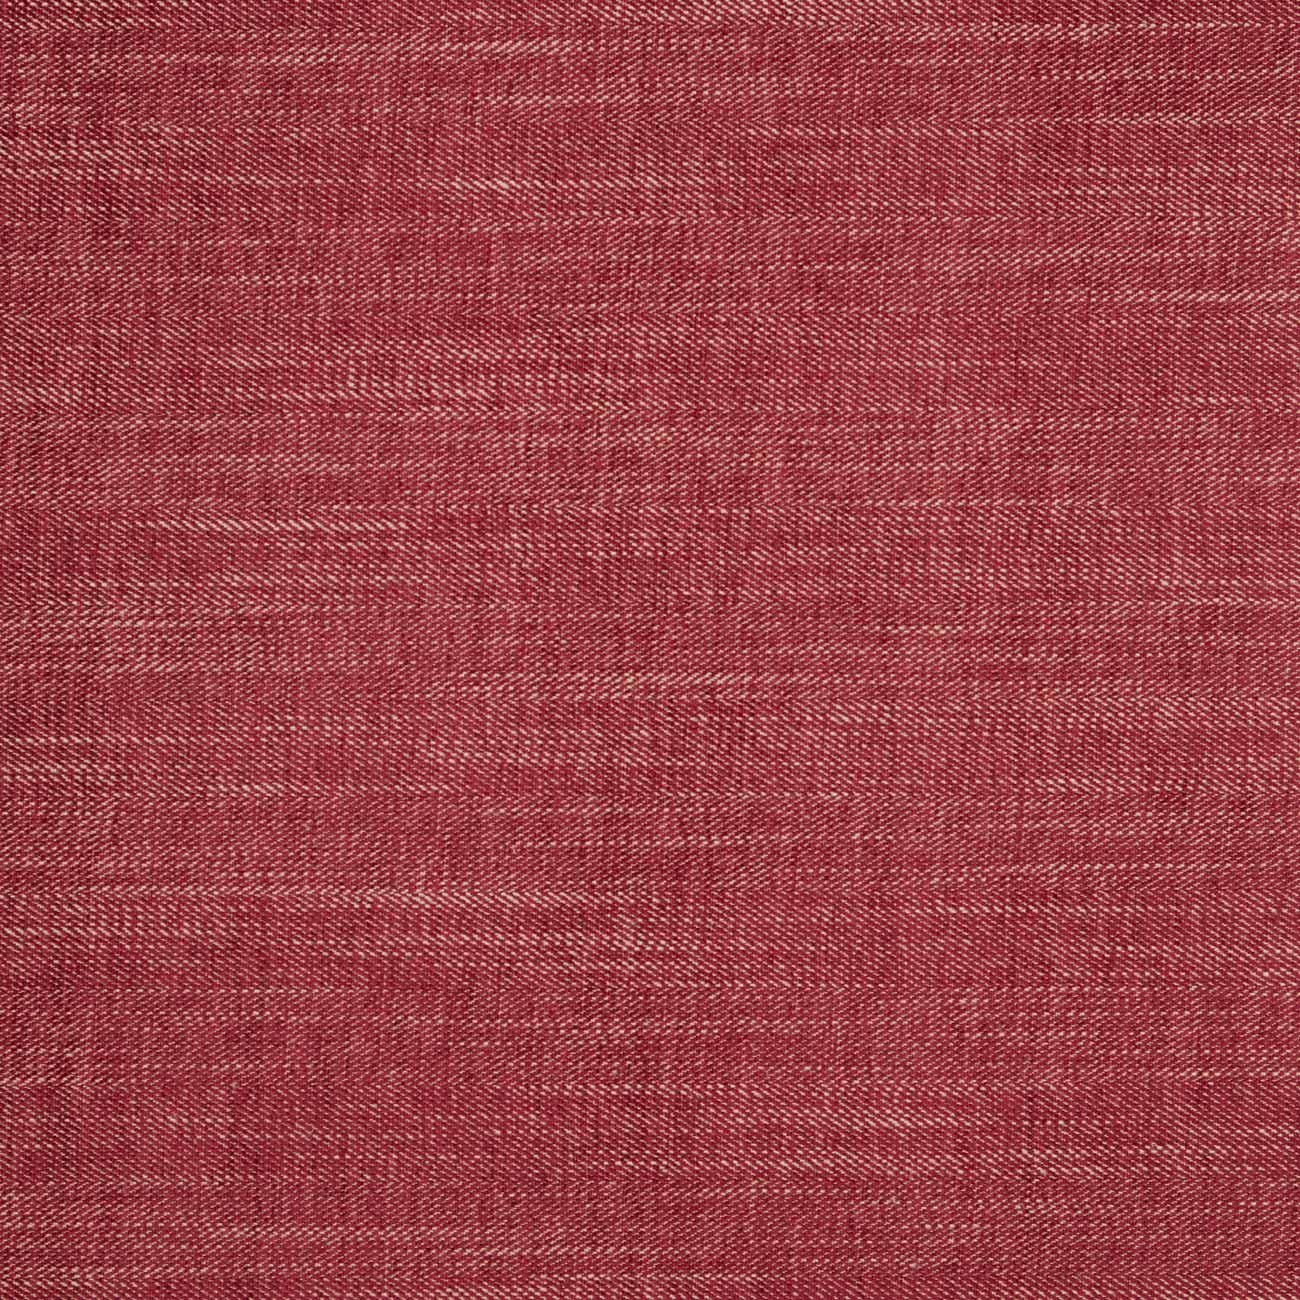 Moray Raspberry Fabric by Clarke & Clarke